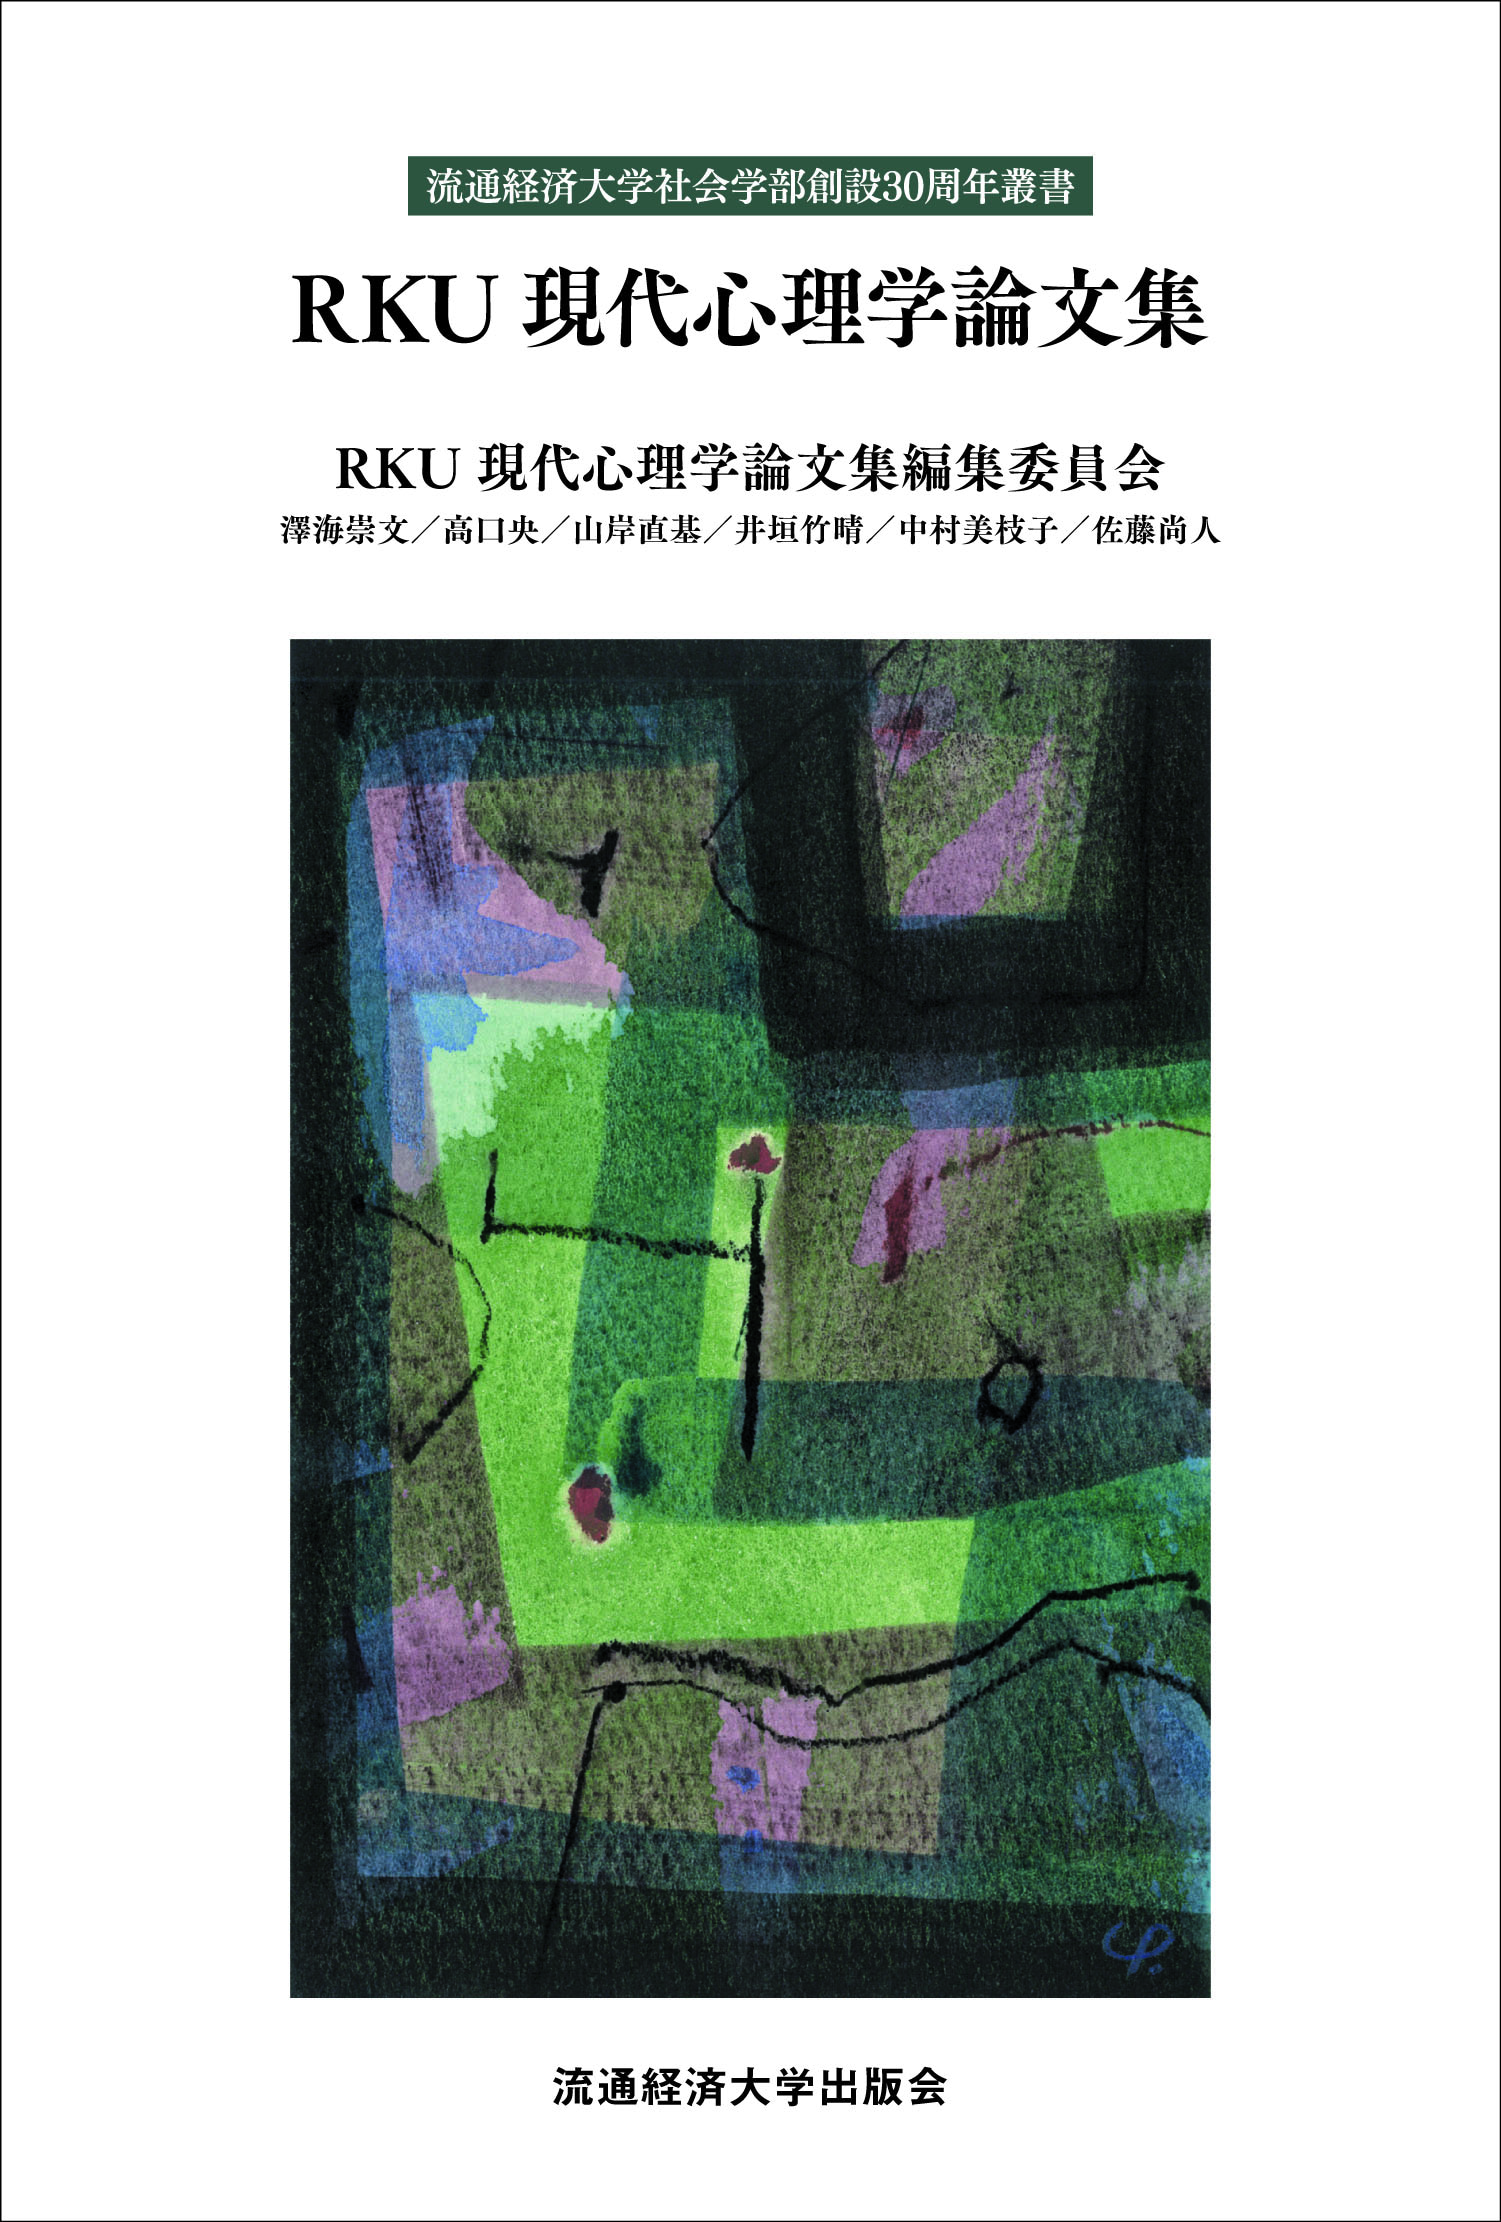 RKU現代心理学論文集